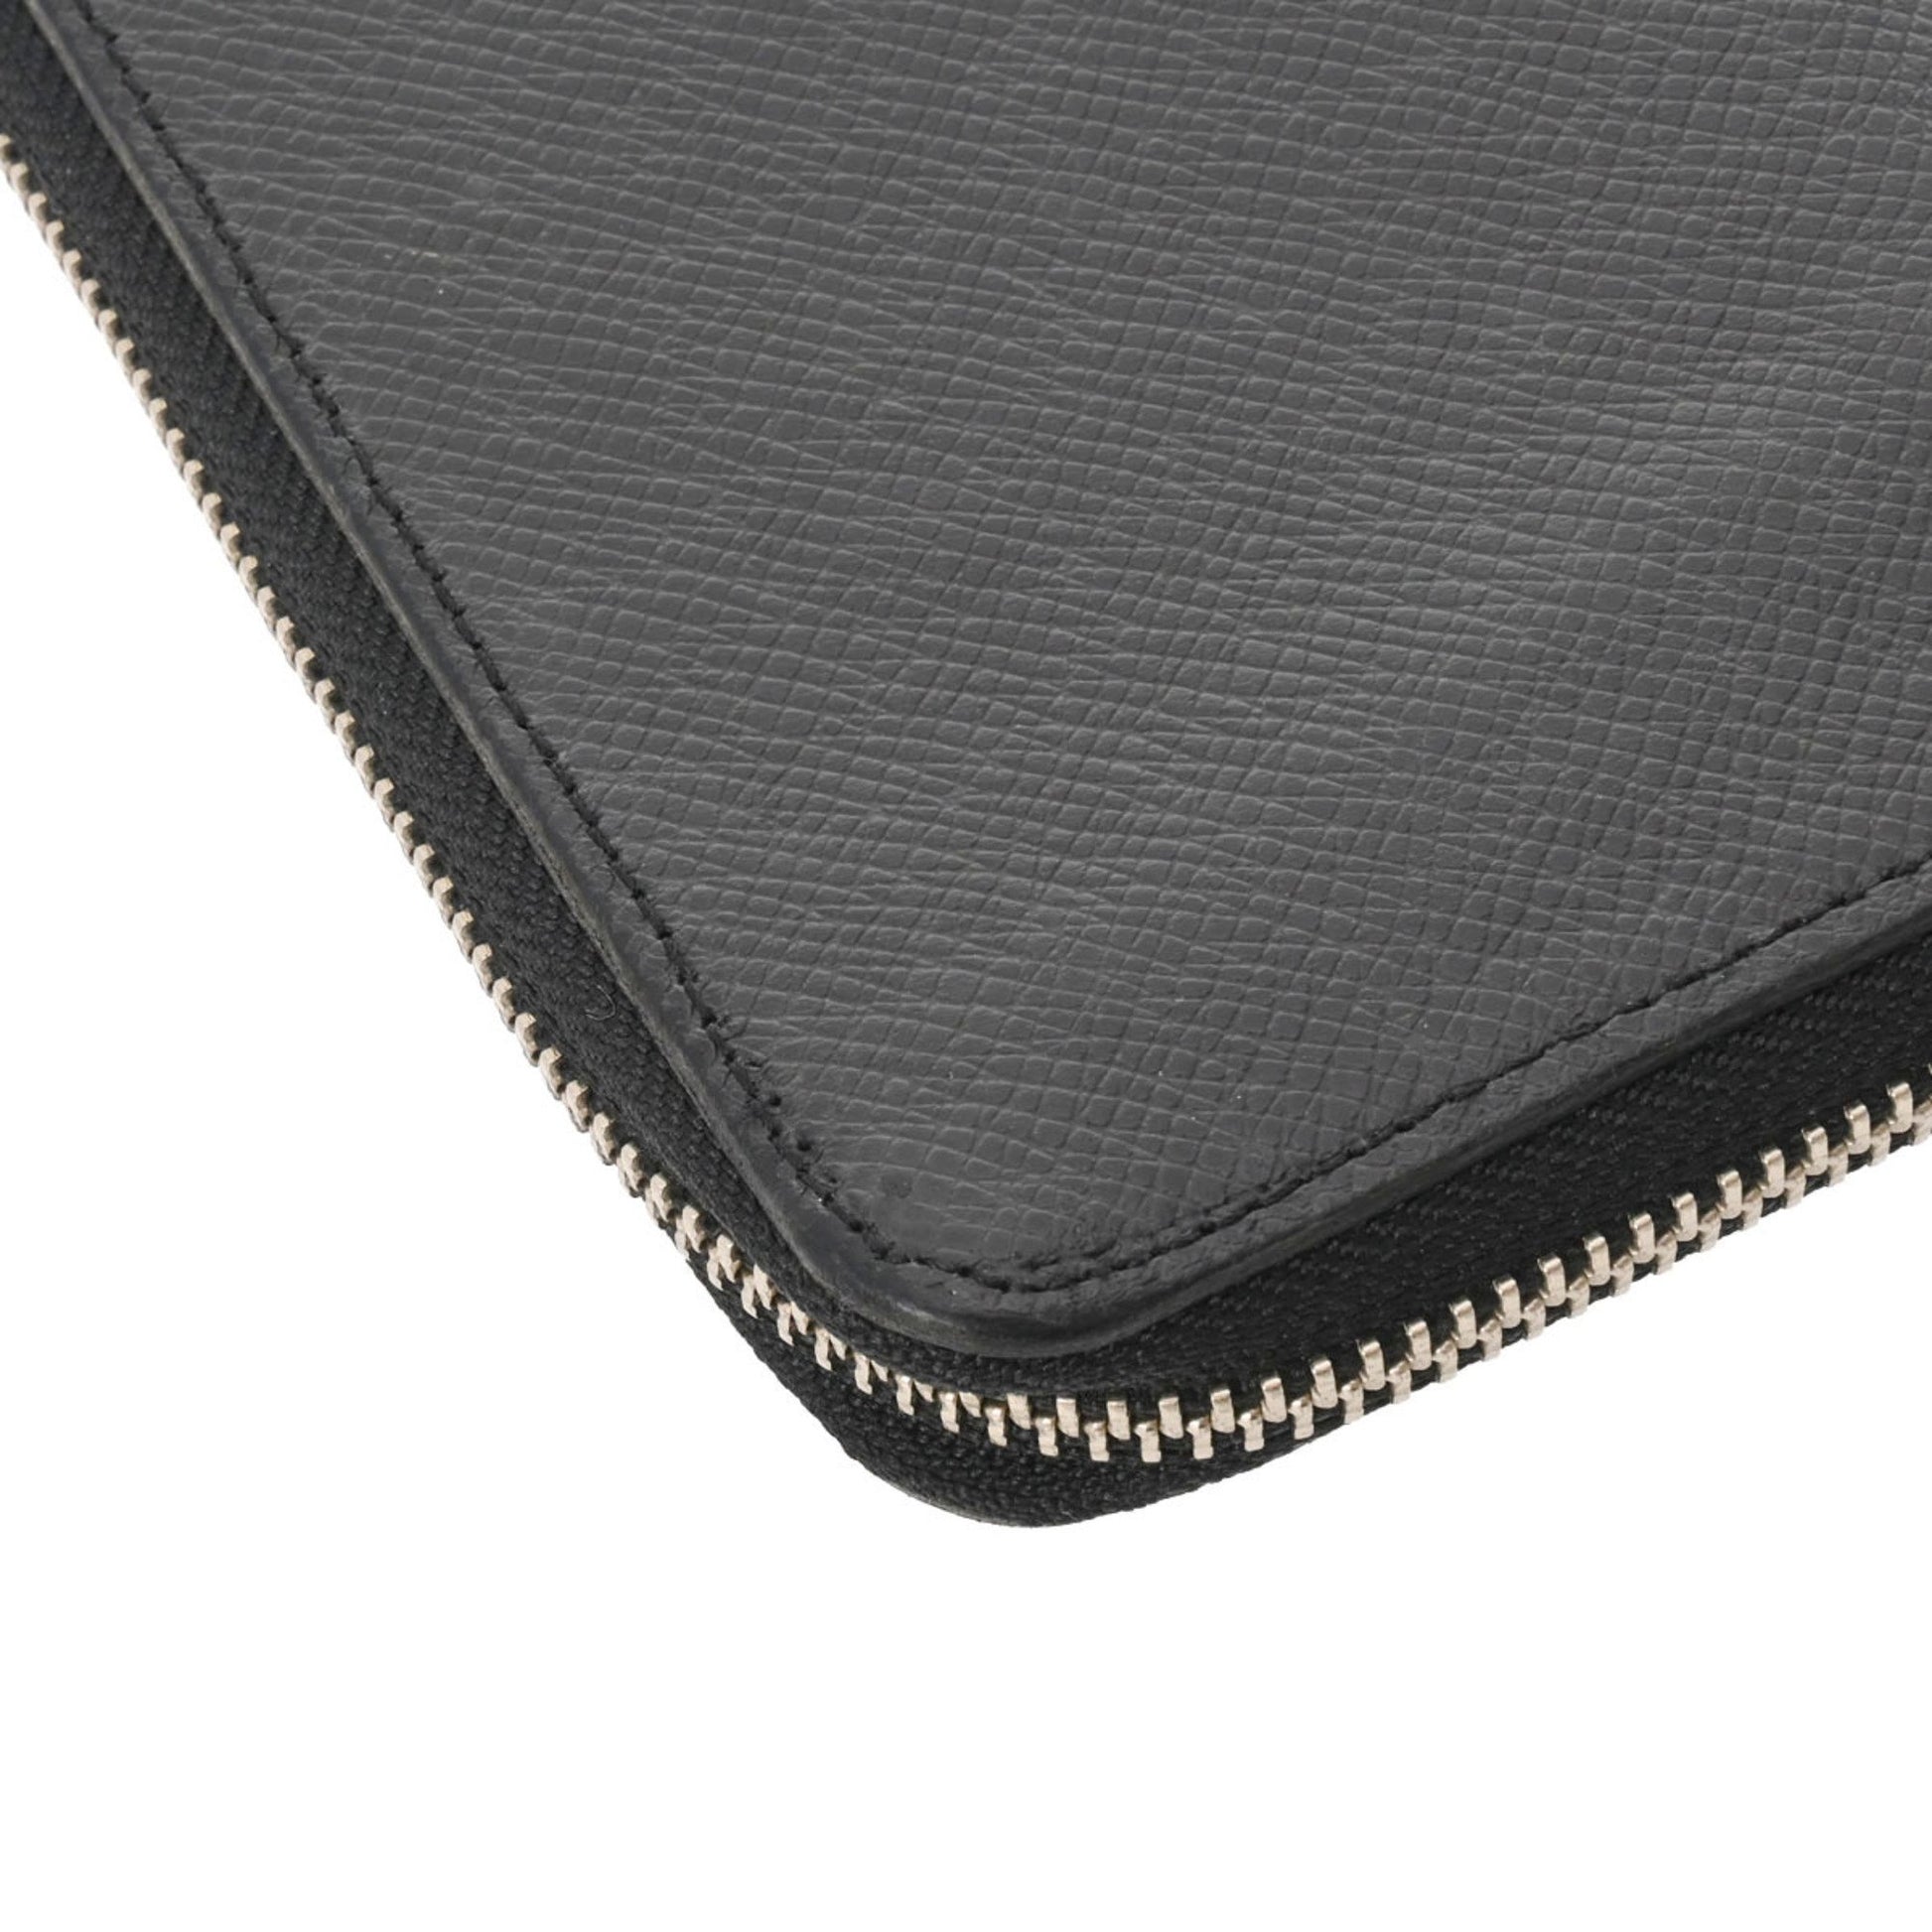 Louis Vuitton Ardoise Taiga Leather Zippy XL Wallet - Yoogi's Closet